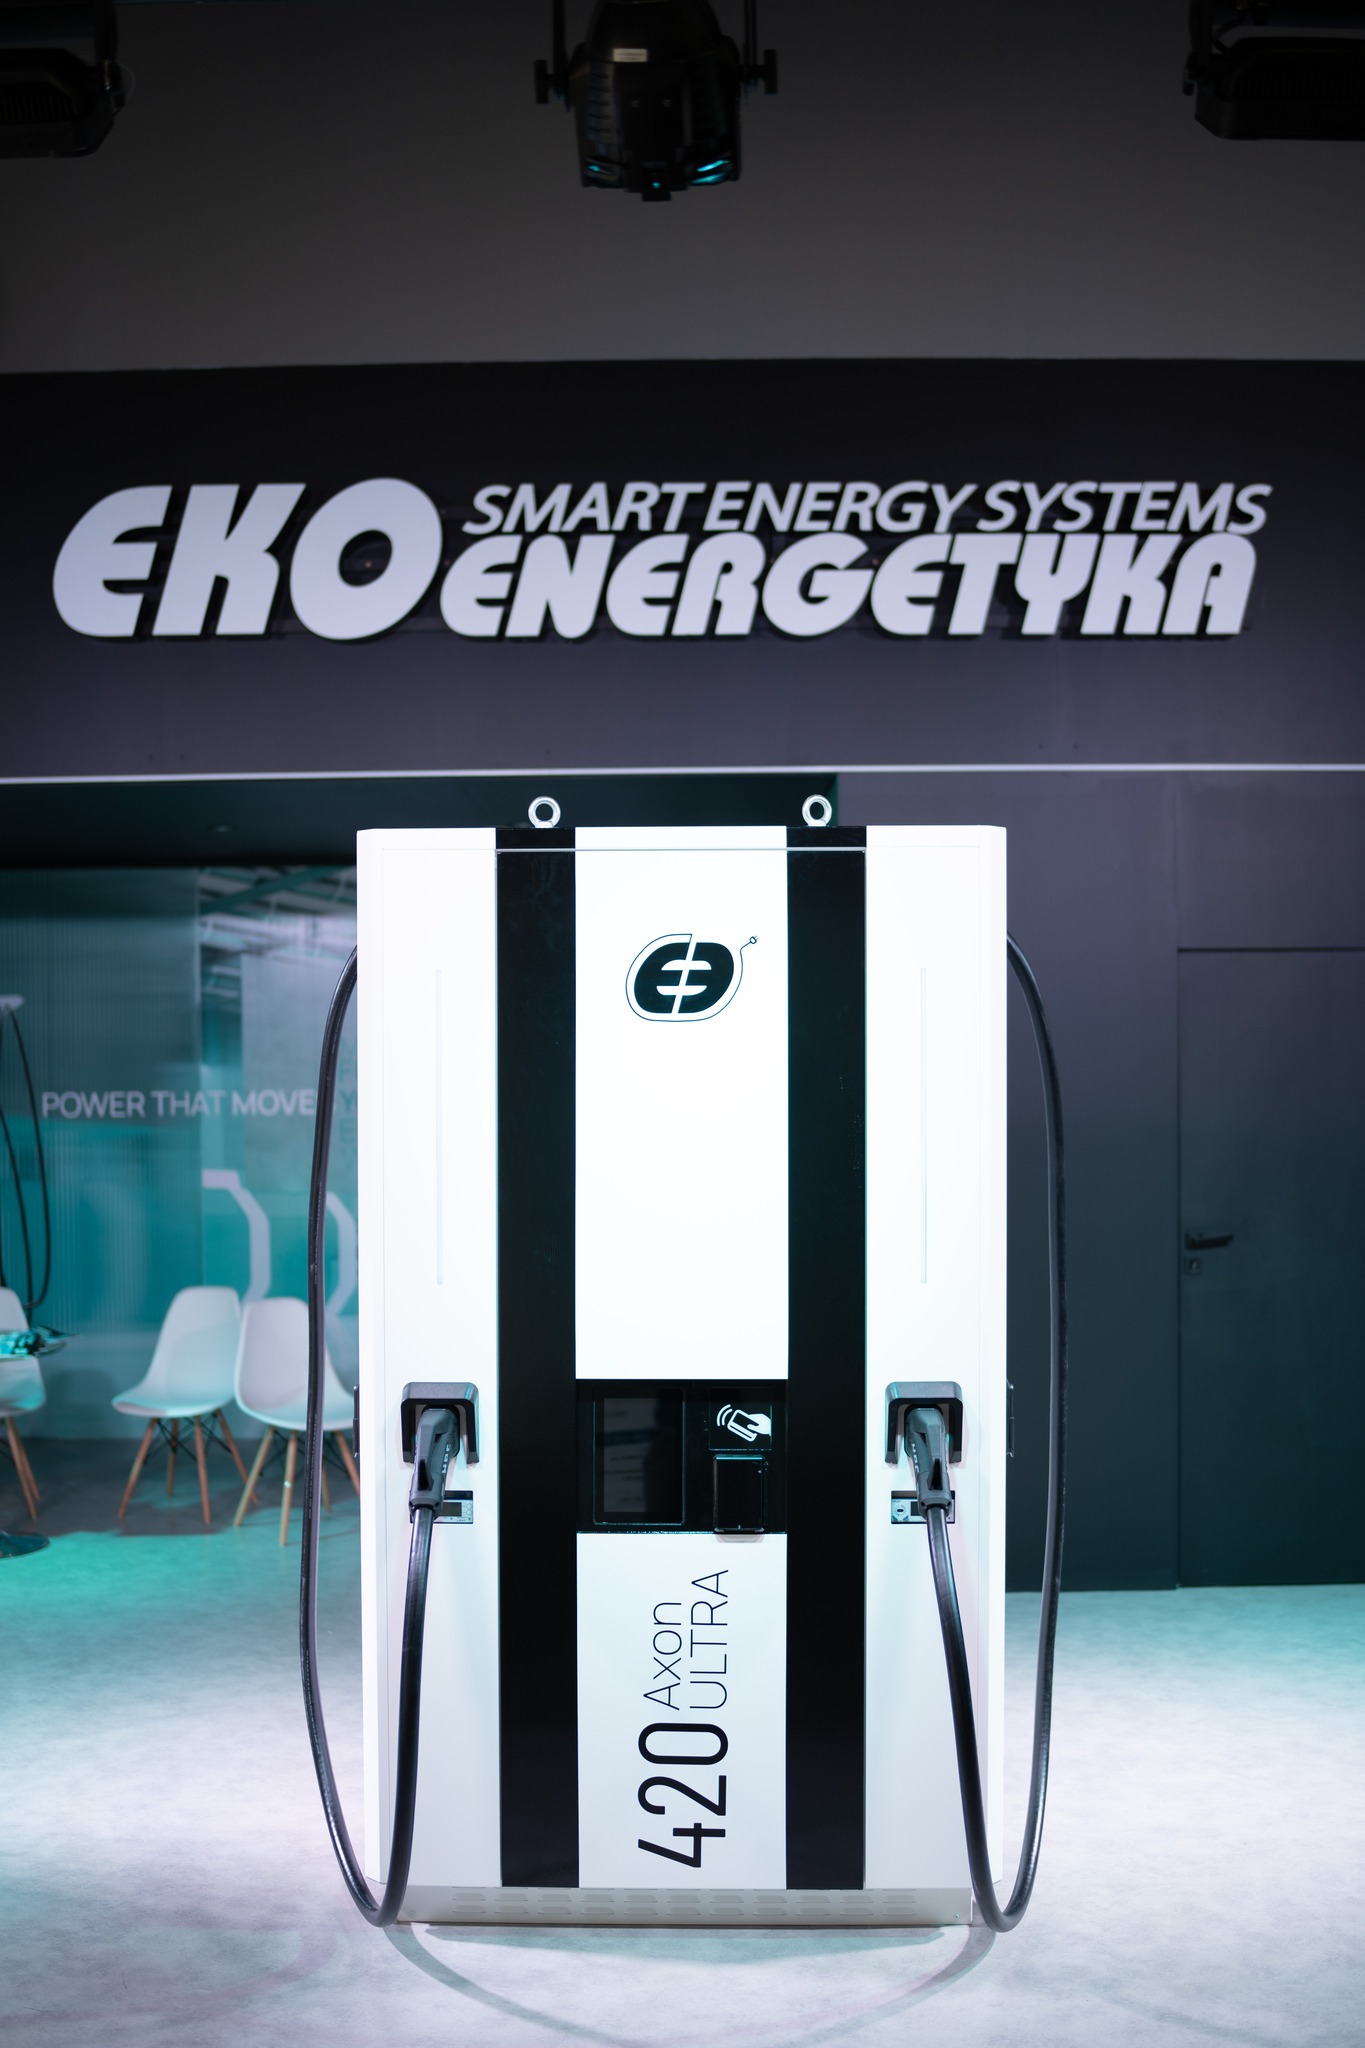 ekoenergetyka combo system, Ekoenergetyka